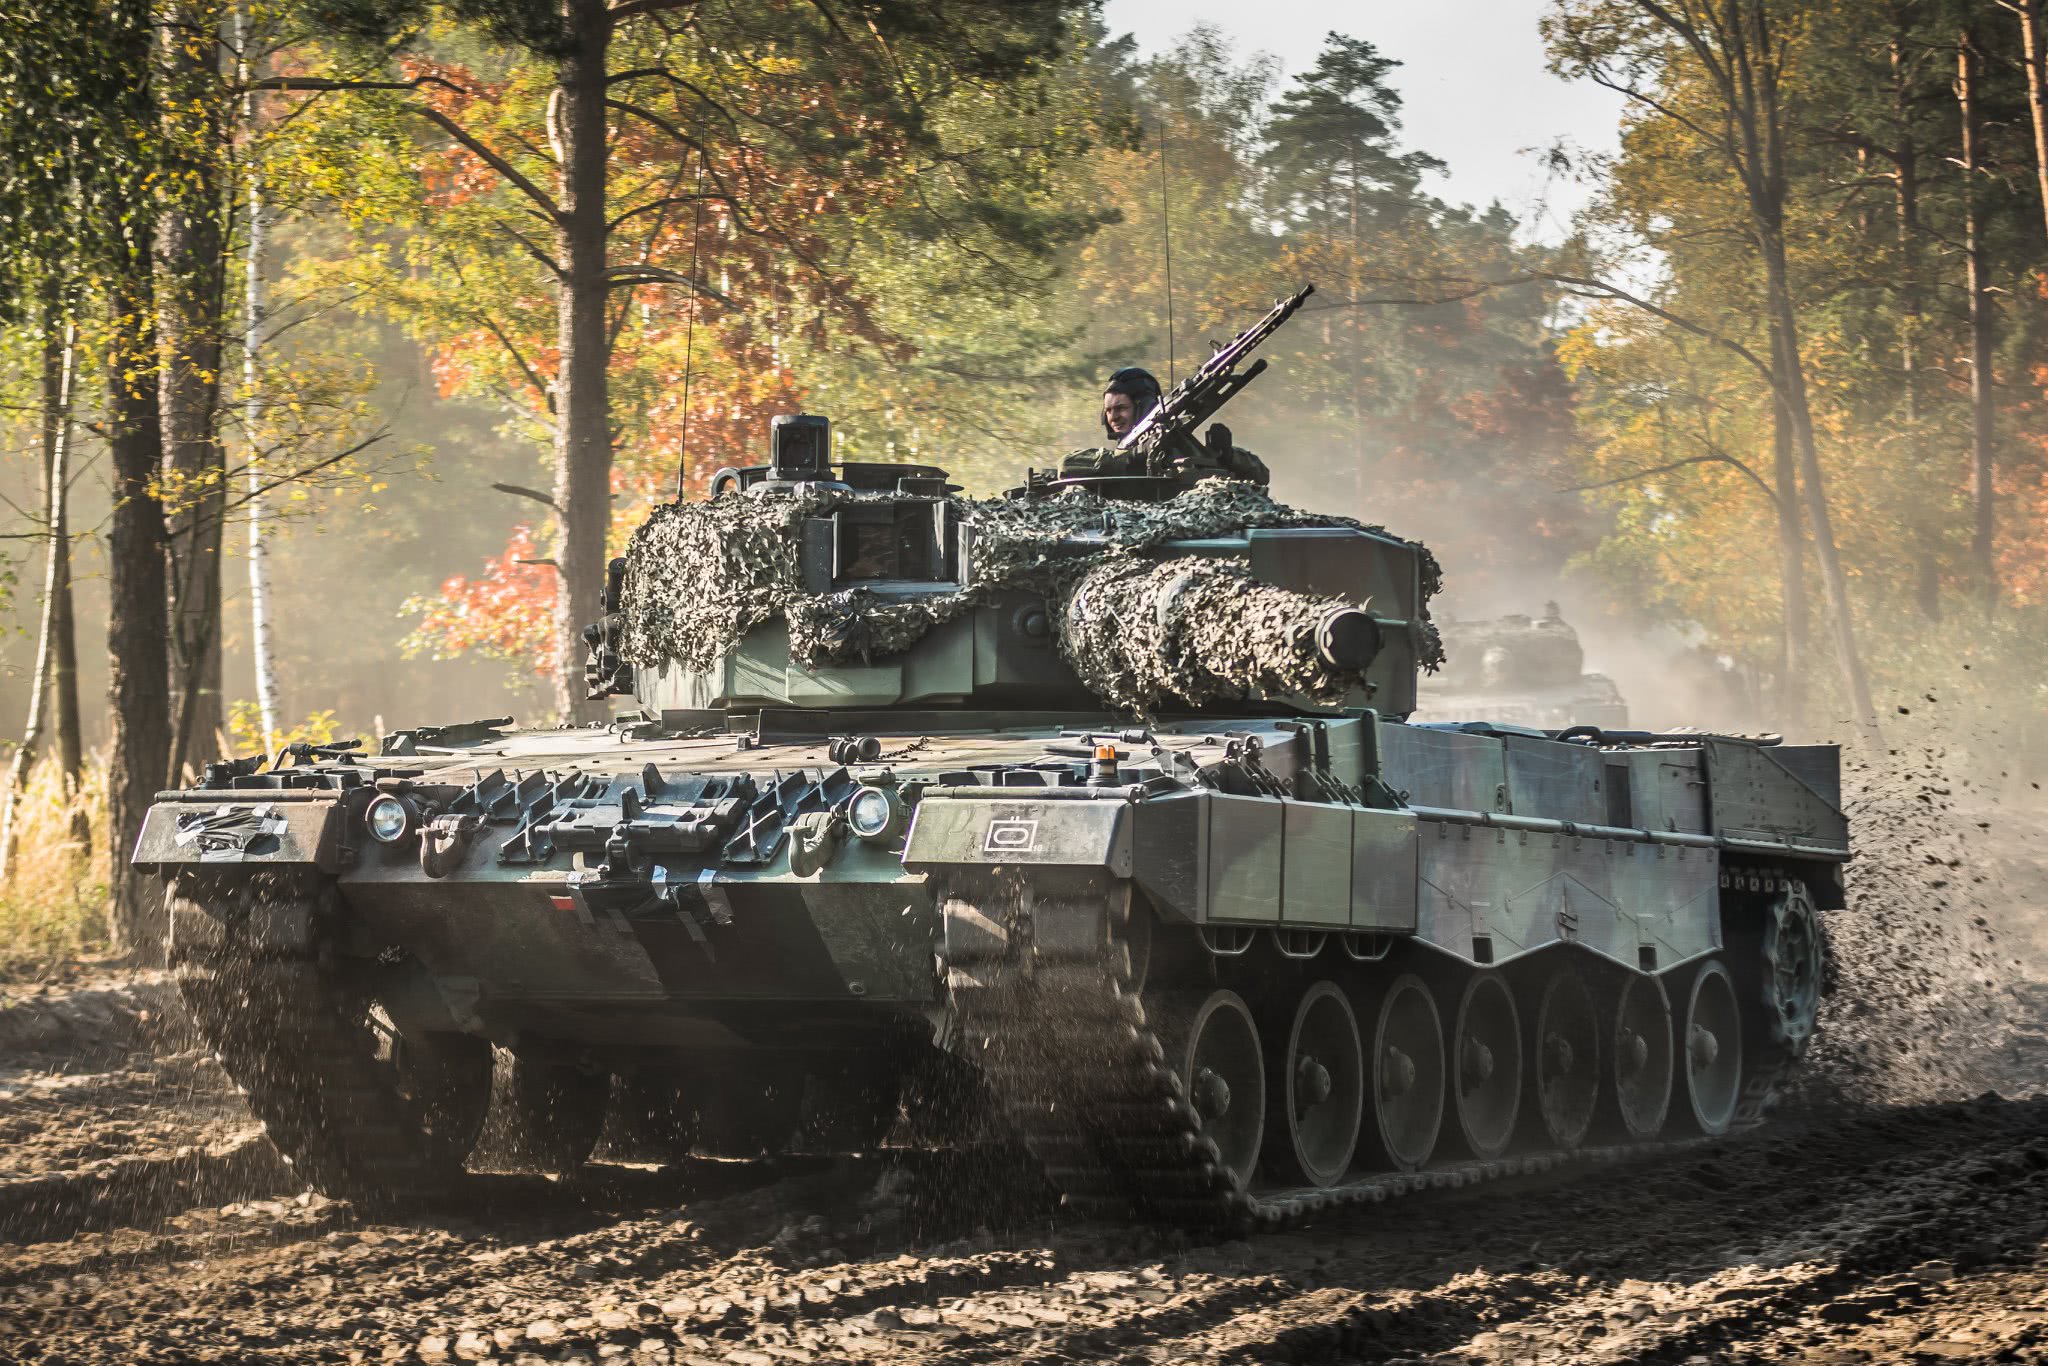 波兰陆军军事演习高清图组,镜头下的豹2主战坦克很有气势!